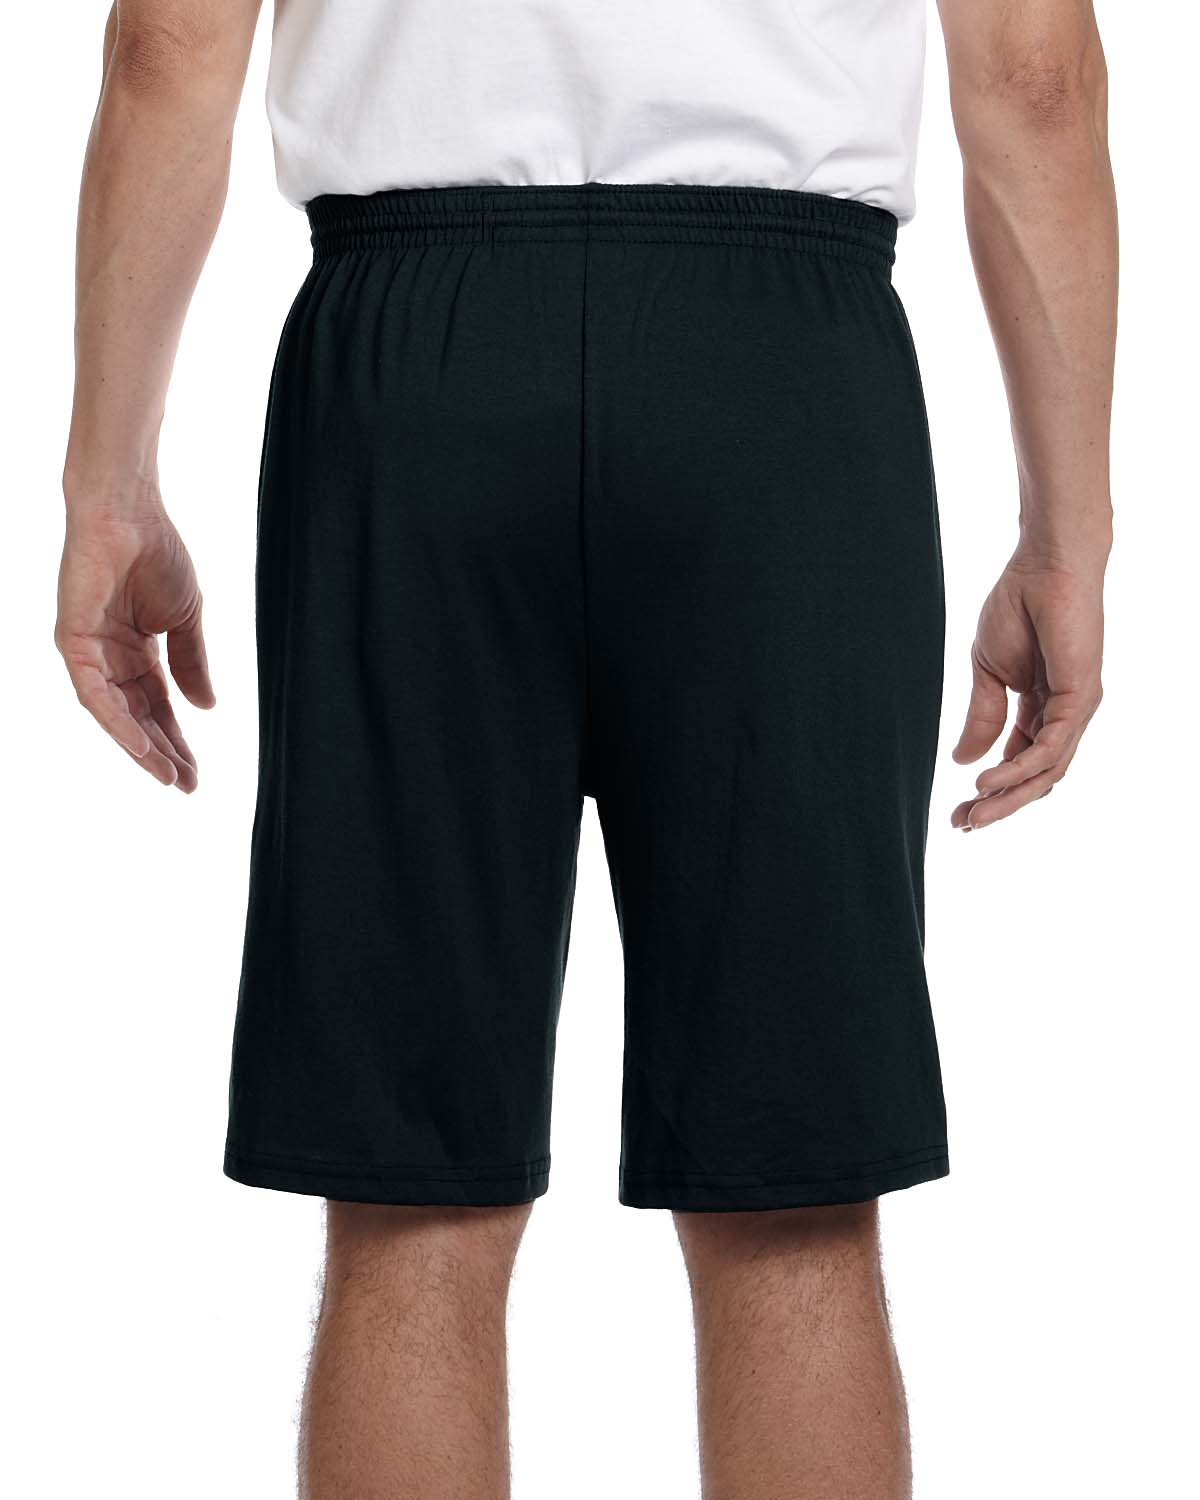 'Augusta Sportswear 915 Adult Longer-Length Jersey Short'